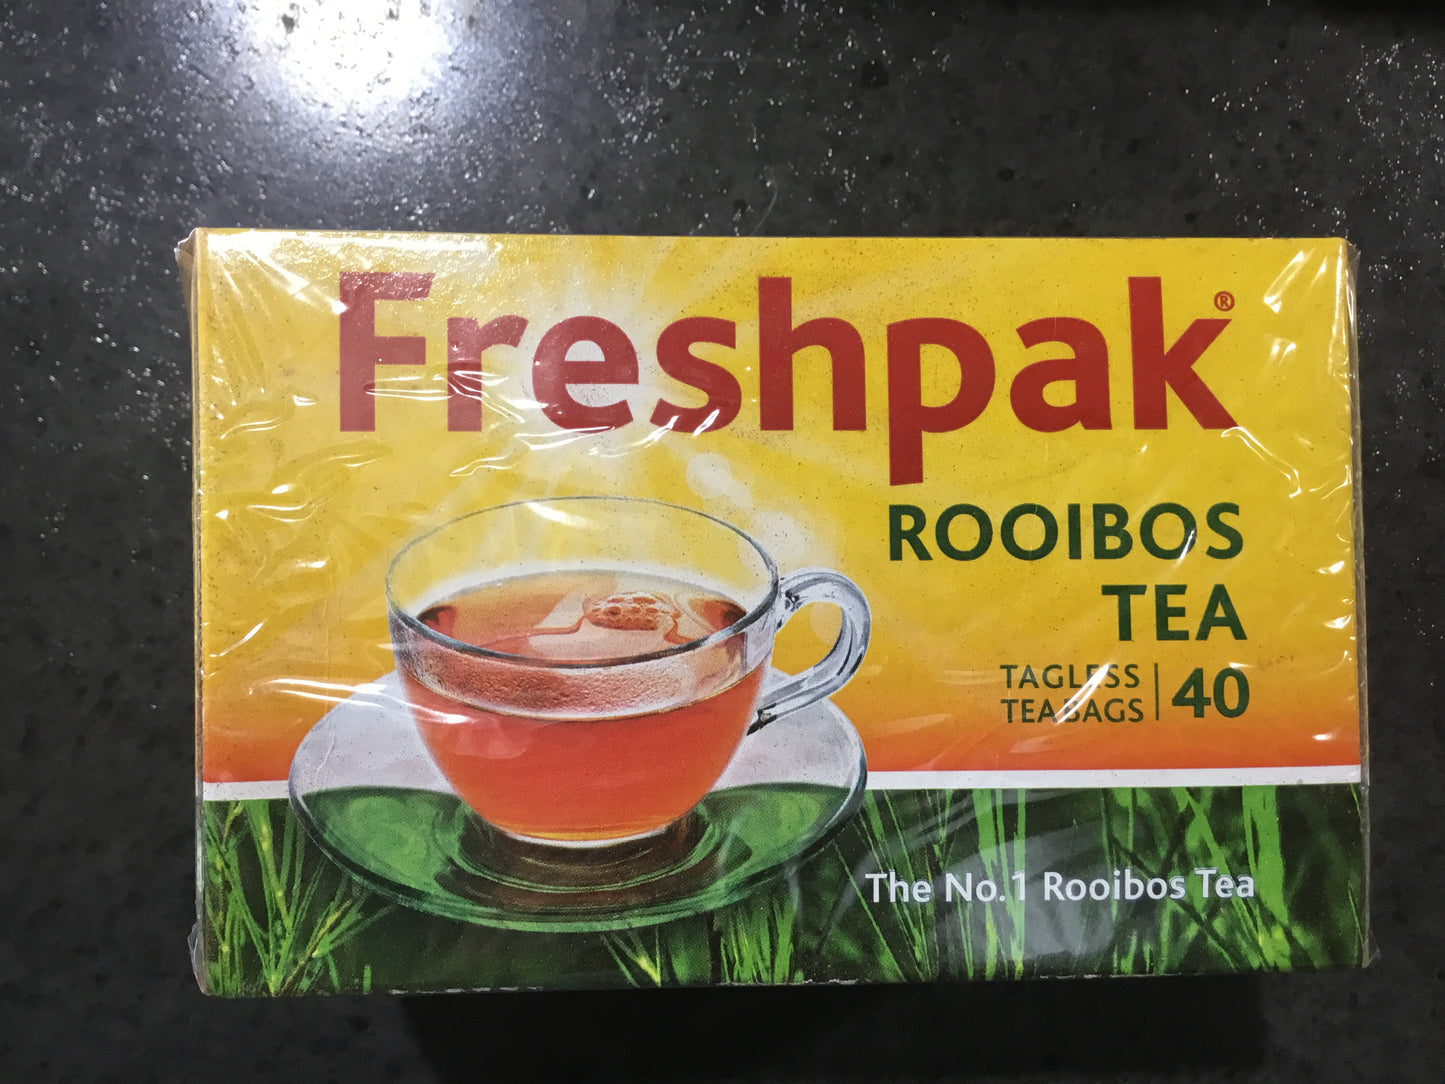 Freshpak rooibos 40 tagless